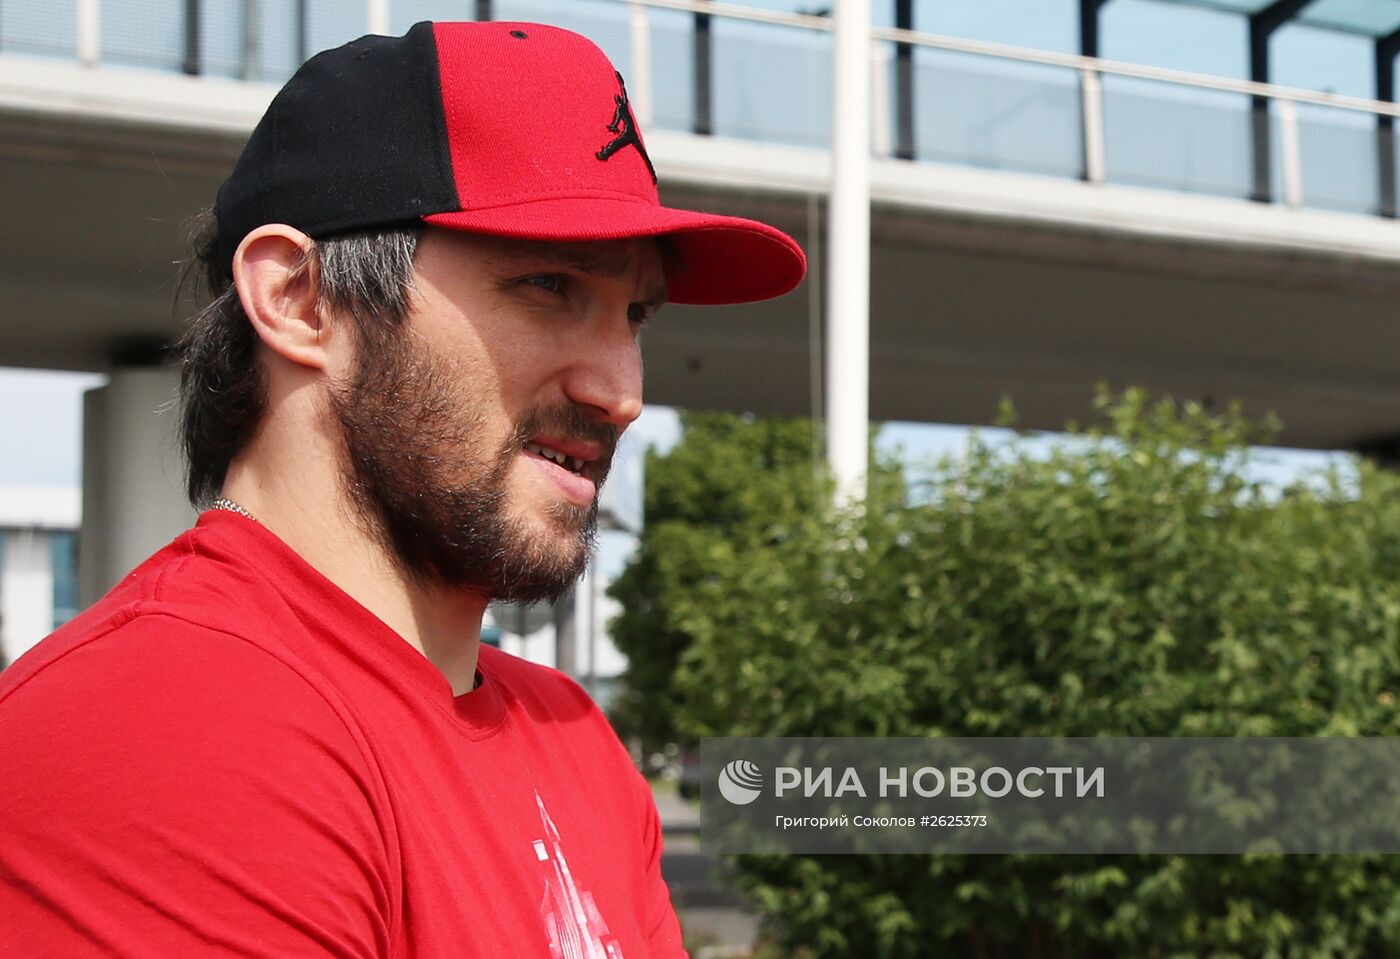 Александр Овечкин прилетел на ЧМ-2015 по хоккею